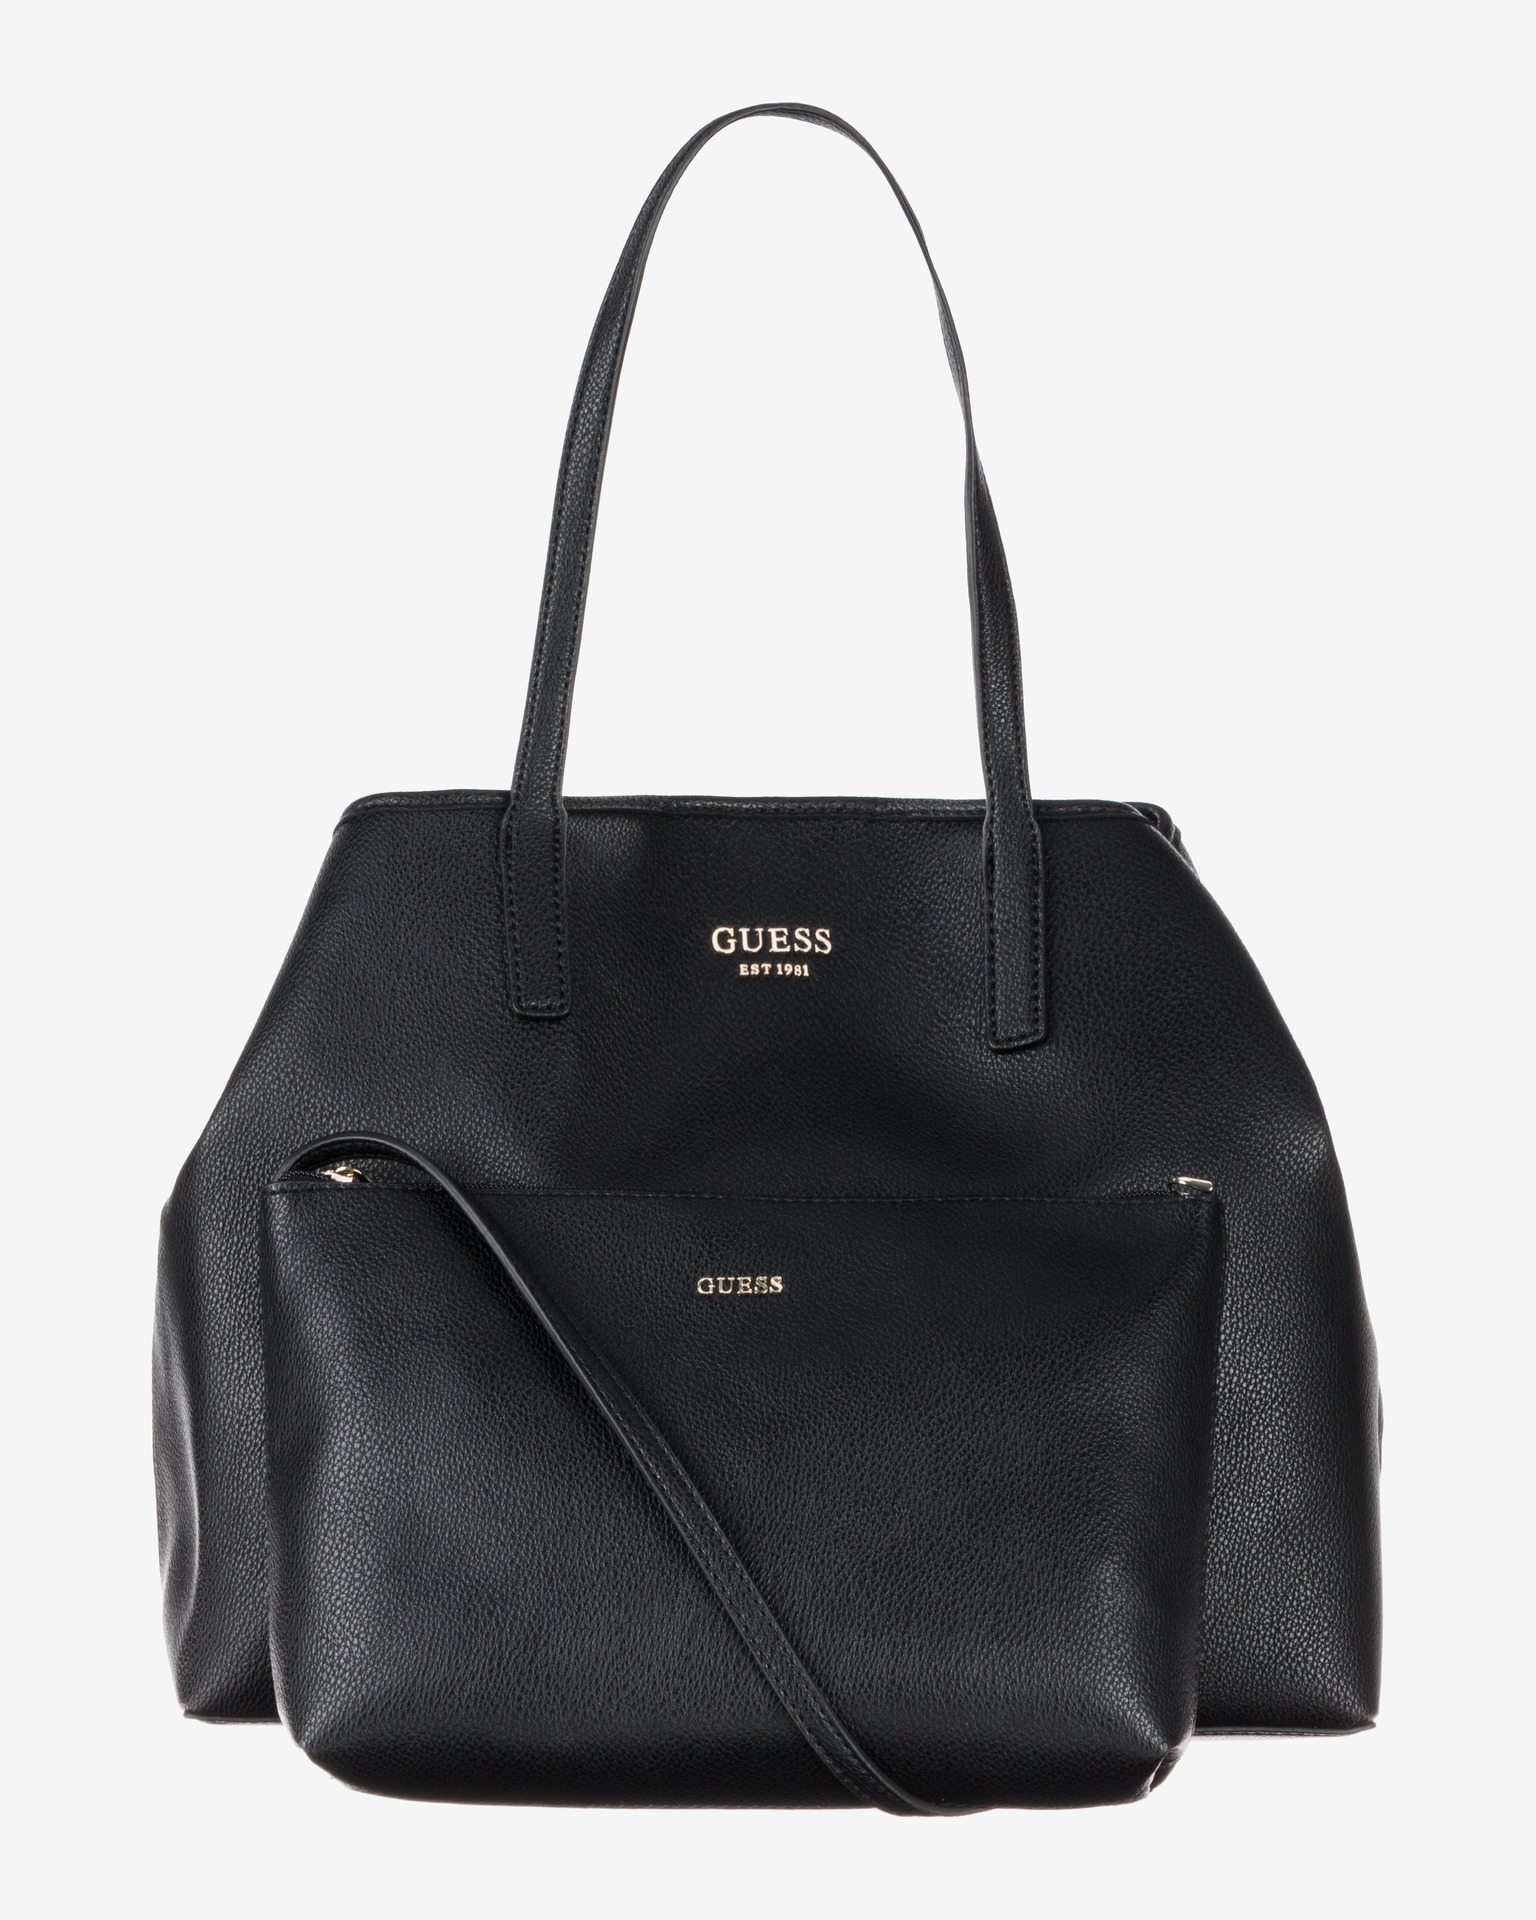 Guess - Vikky Large Handbag